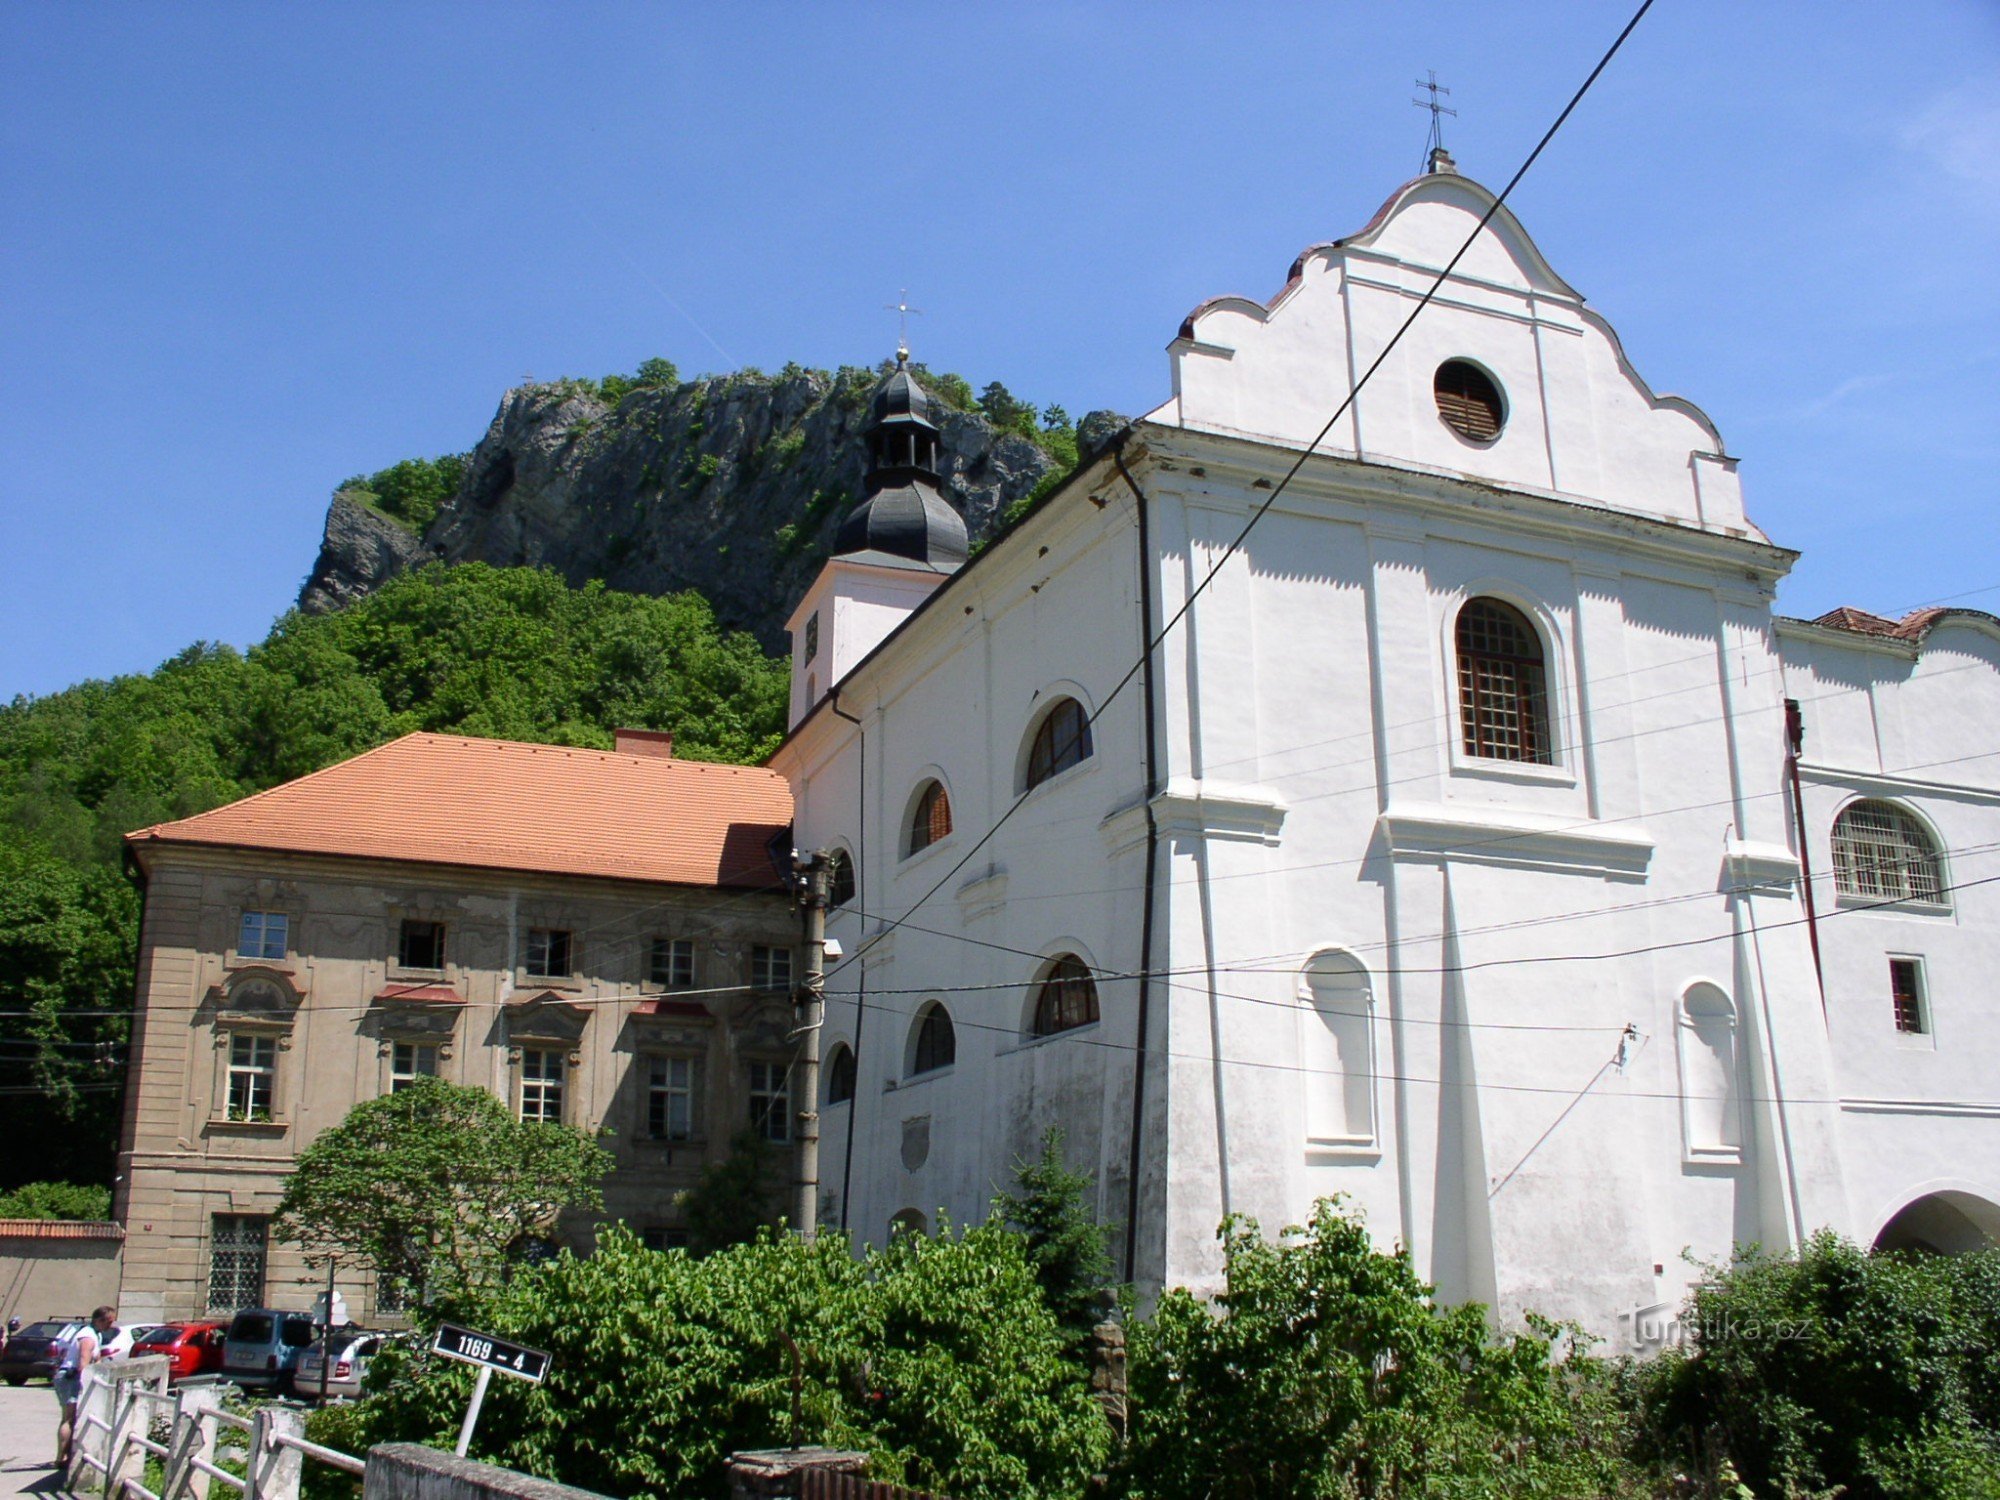 Monasterio e Iglesia de la Natividad de St. San Juan Bautista al fondo, una roca con una cruz